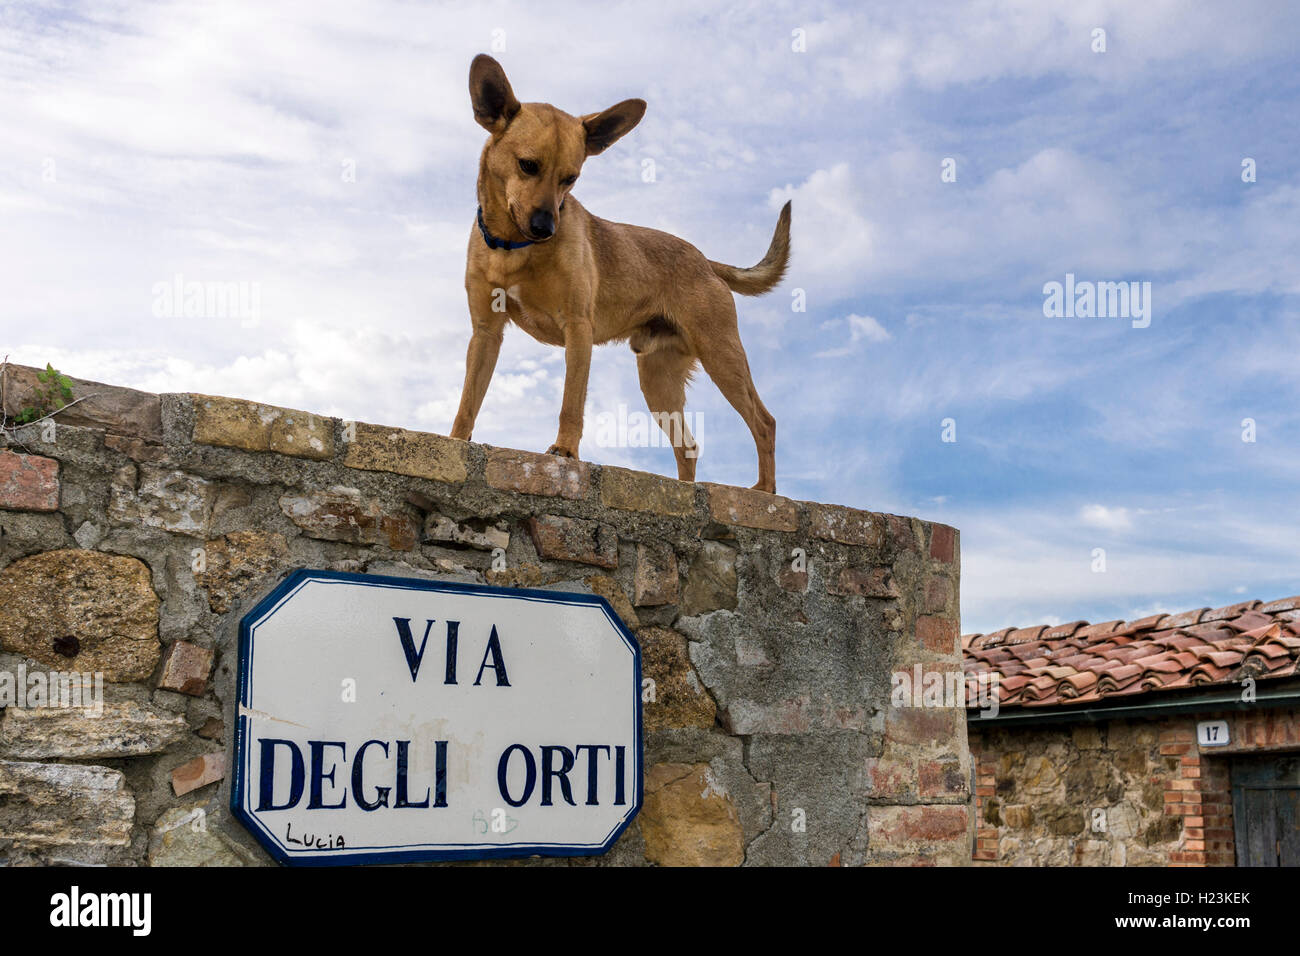 Ruelle, maisons en pierre en ville, le chien debout sur le mur, San Quirico d'Orcia, Toscane, Italie Banque D'Images